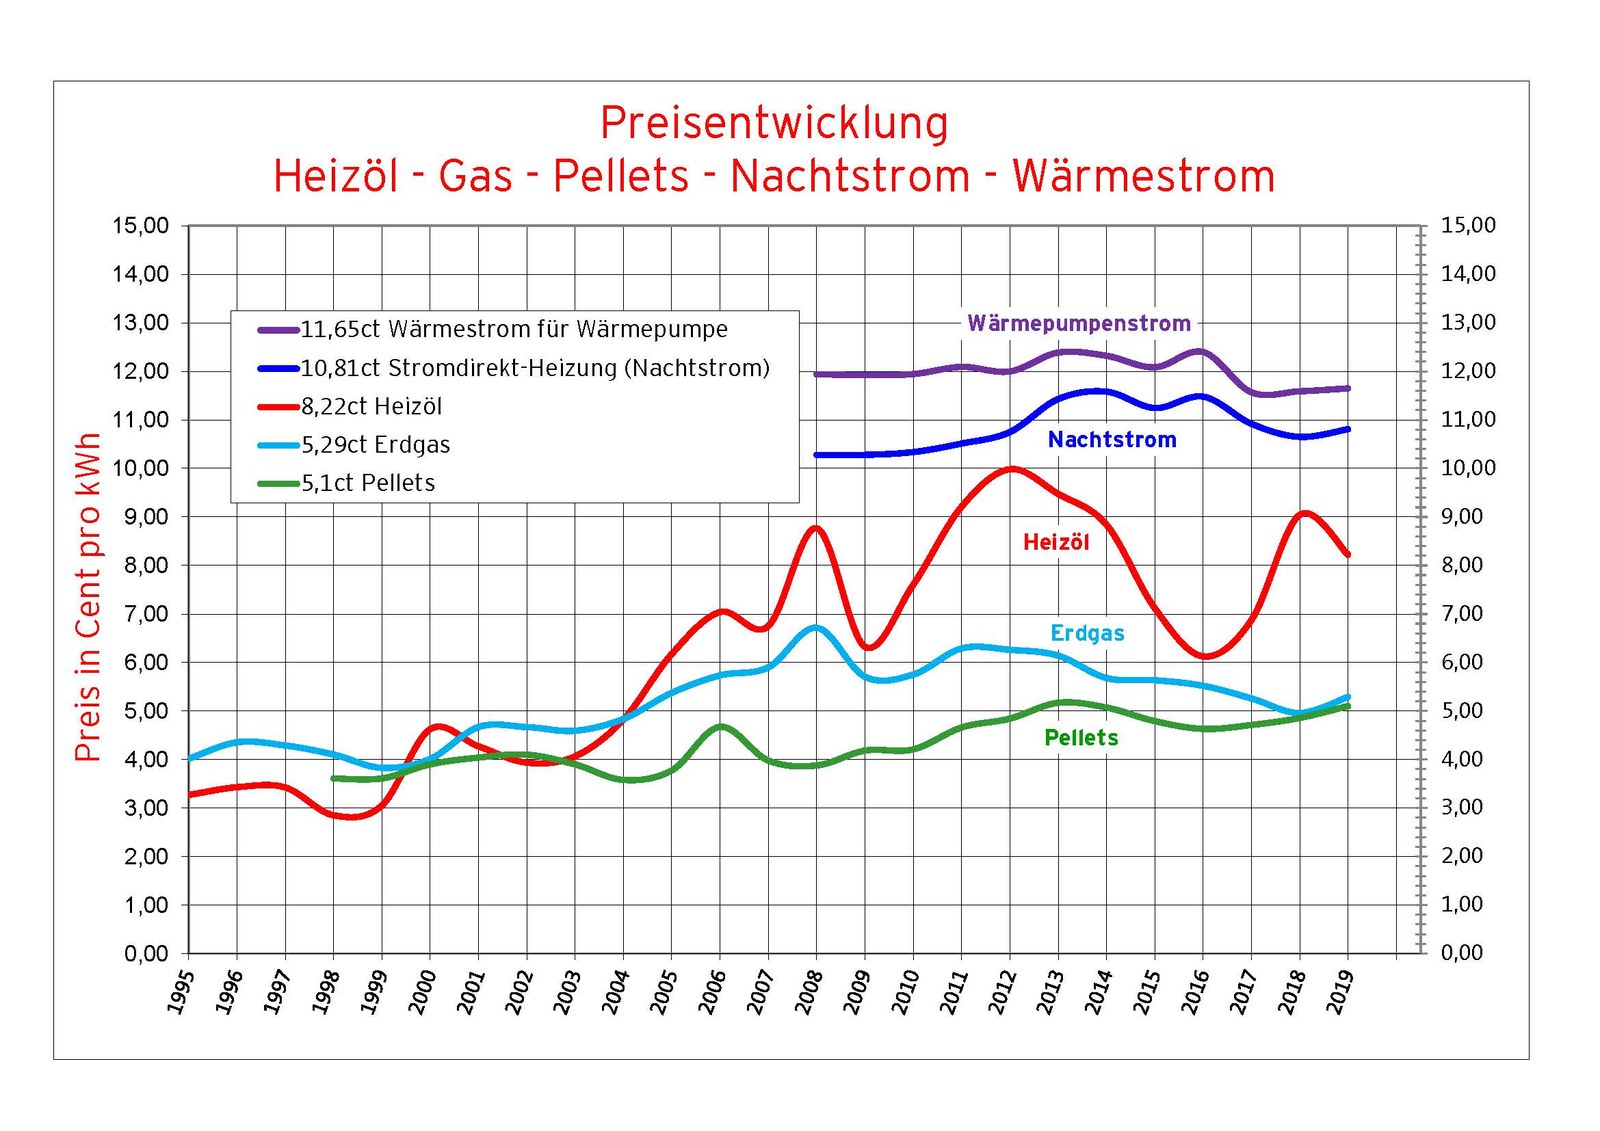 Die nomiale Entwicklung der Energiepreise für Heizenergie in Vorarlberg seit 1995. Grafik Energieinstitut Vorarlberg. Quelle: Eigene Erhebungen.